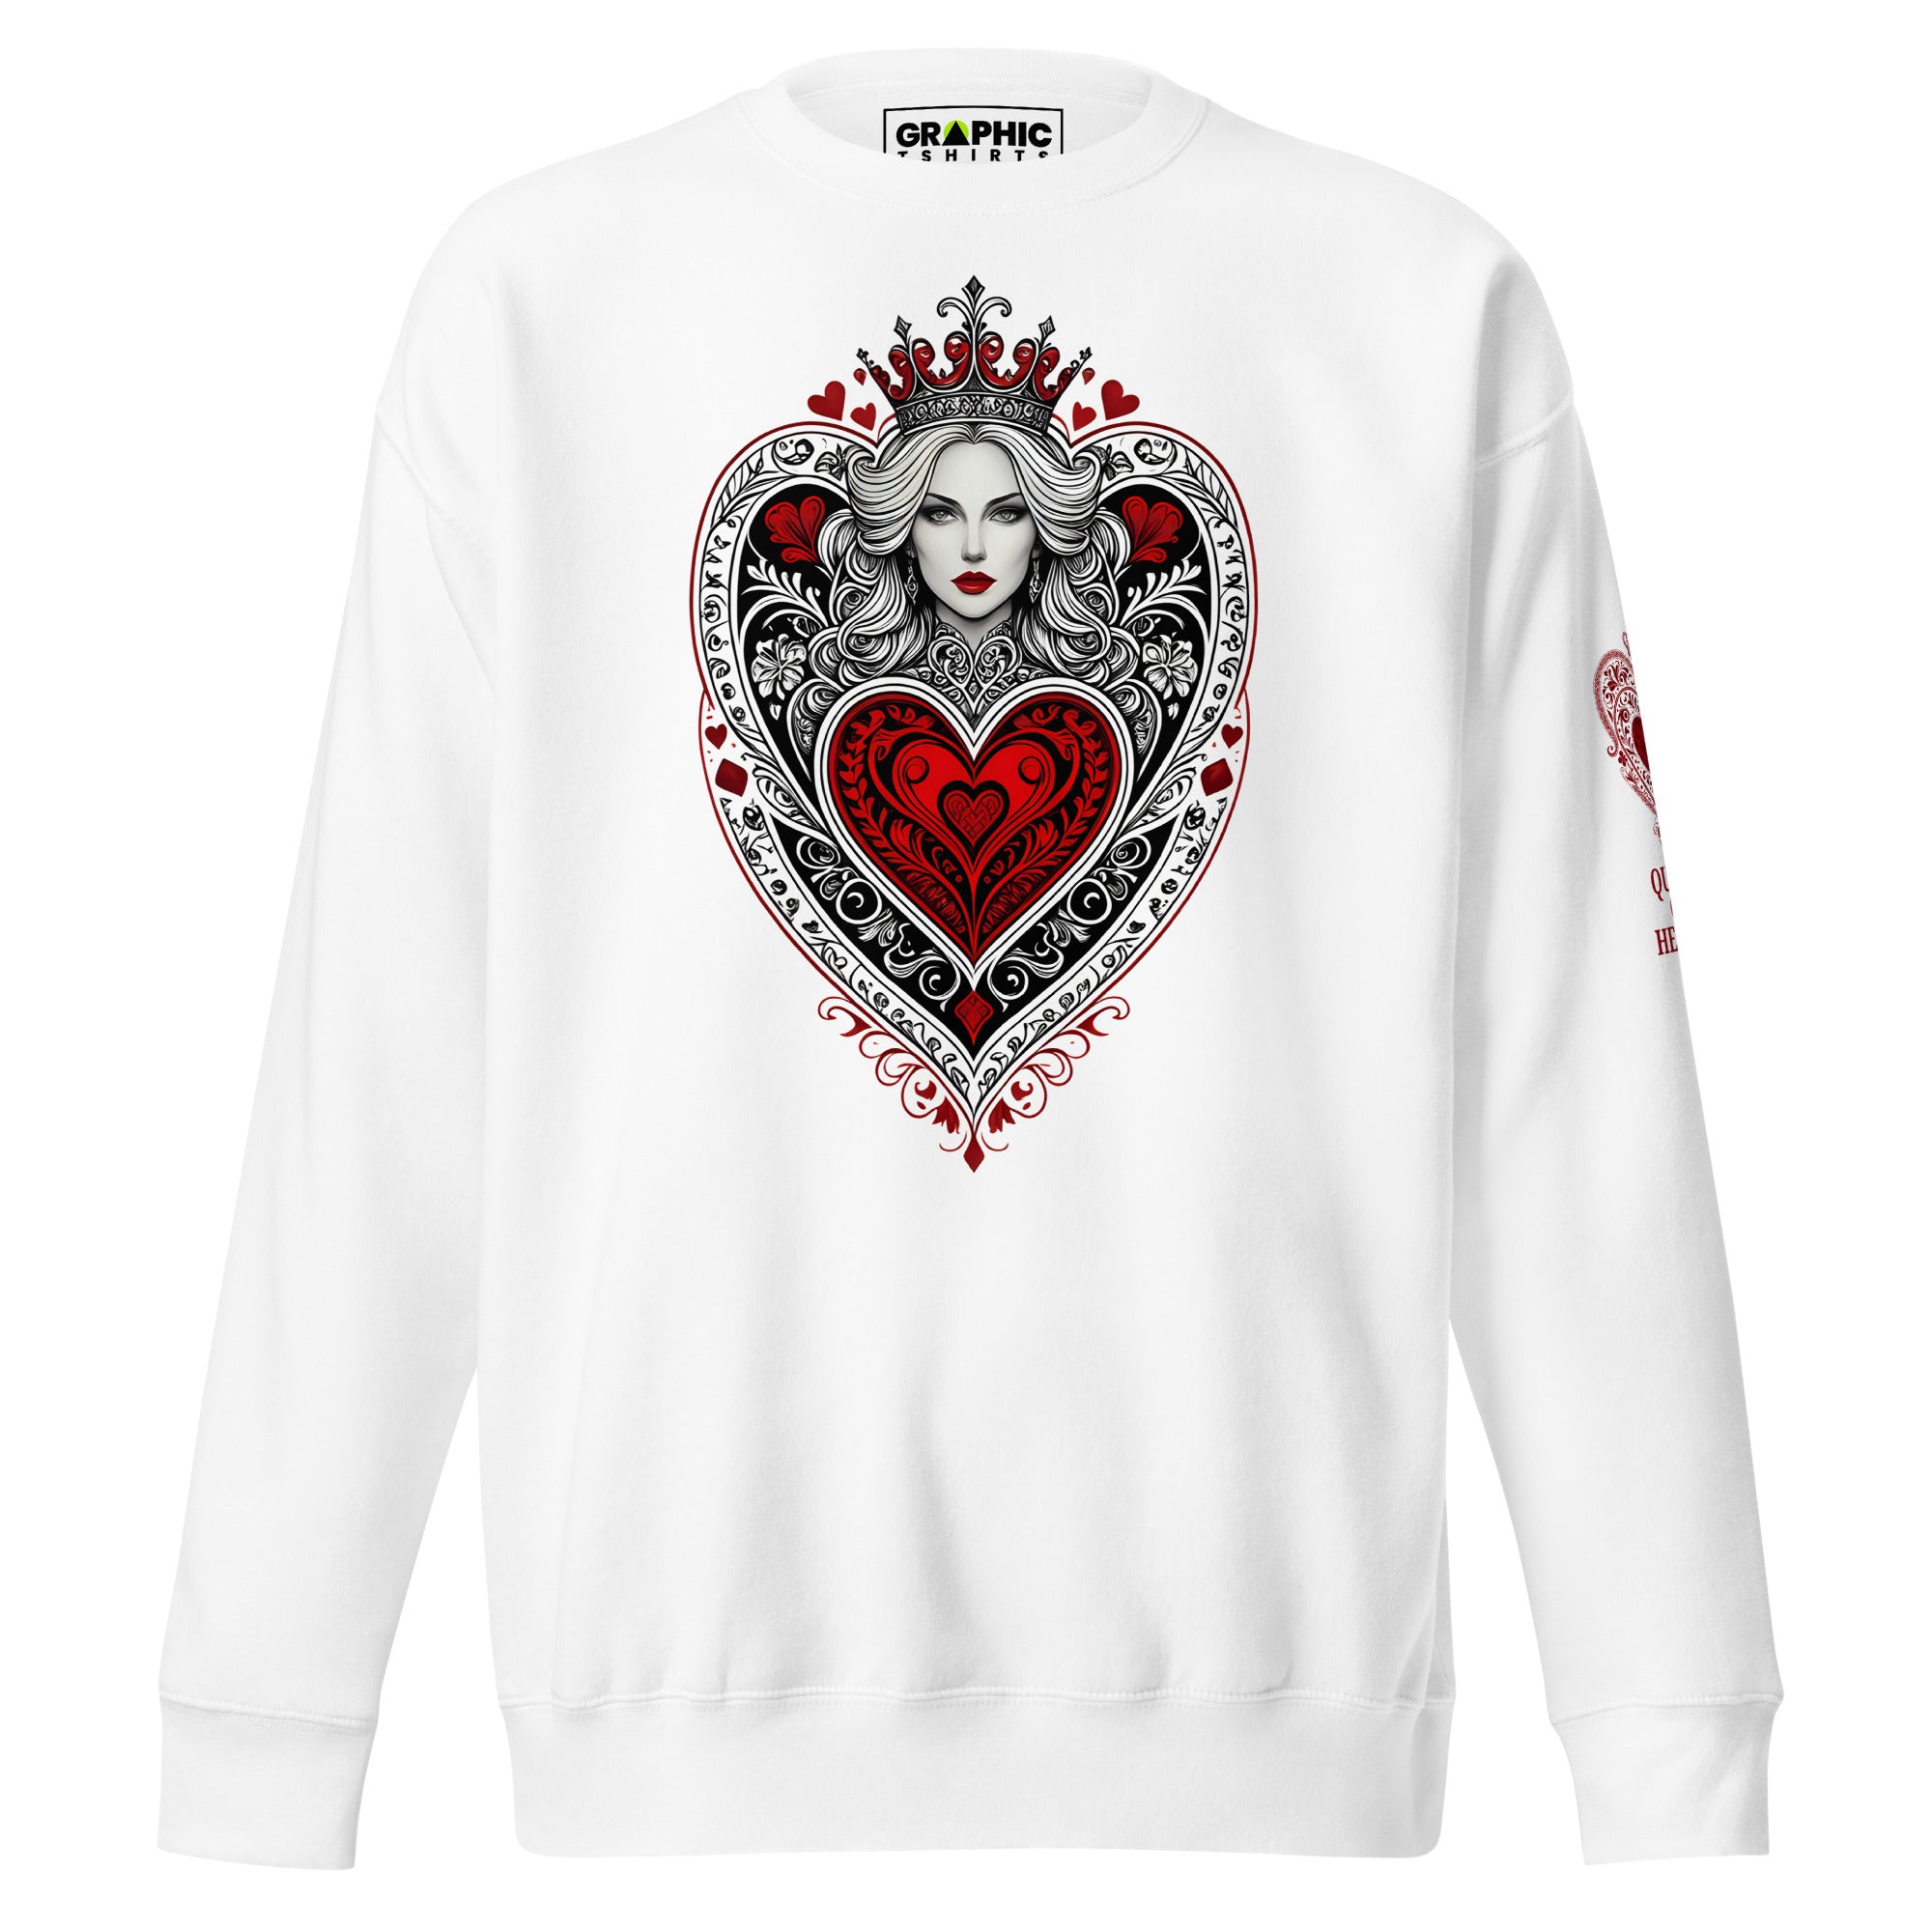 Unisex Premium Sweatshirt - Queen Of Hearts Series v.35